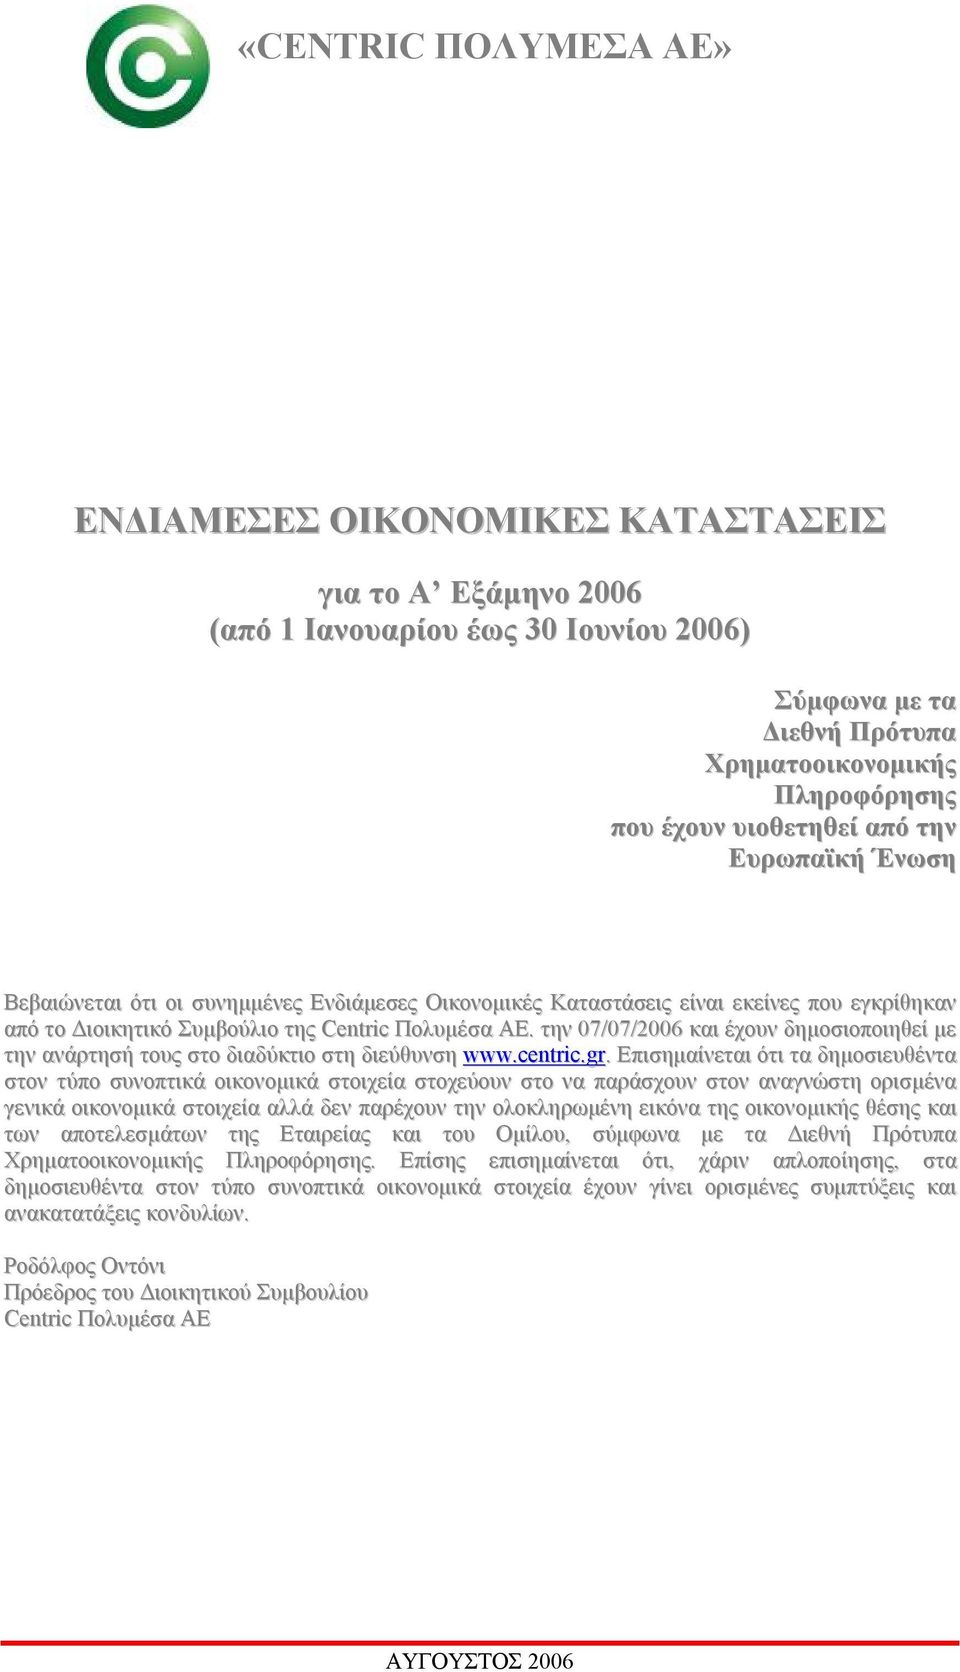 την 07/07/2006 και έχουν δημοσιοποιηθεί με την ανάρτησή τους στο διαδύκτιο στη διεύθυνση www.centric.gr.